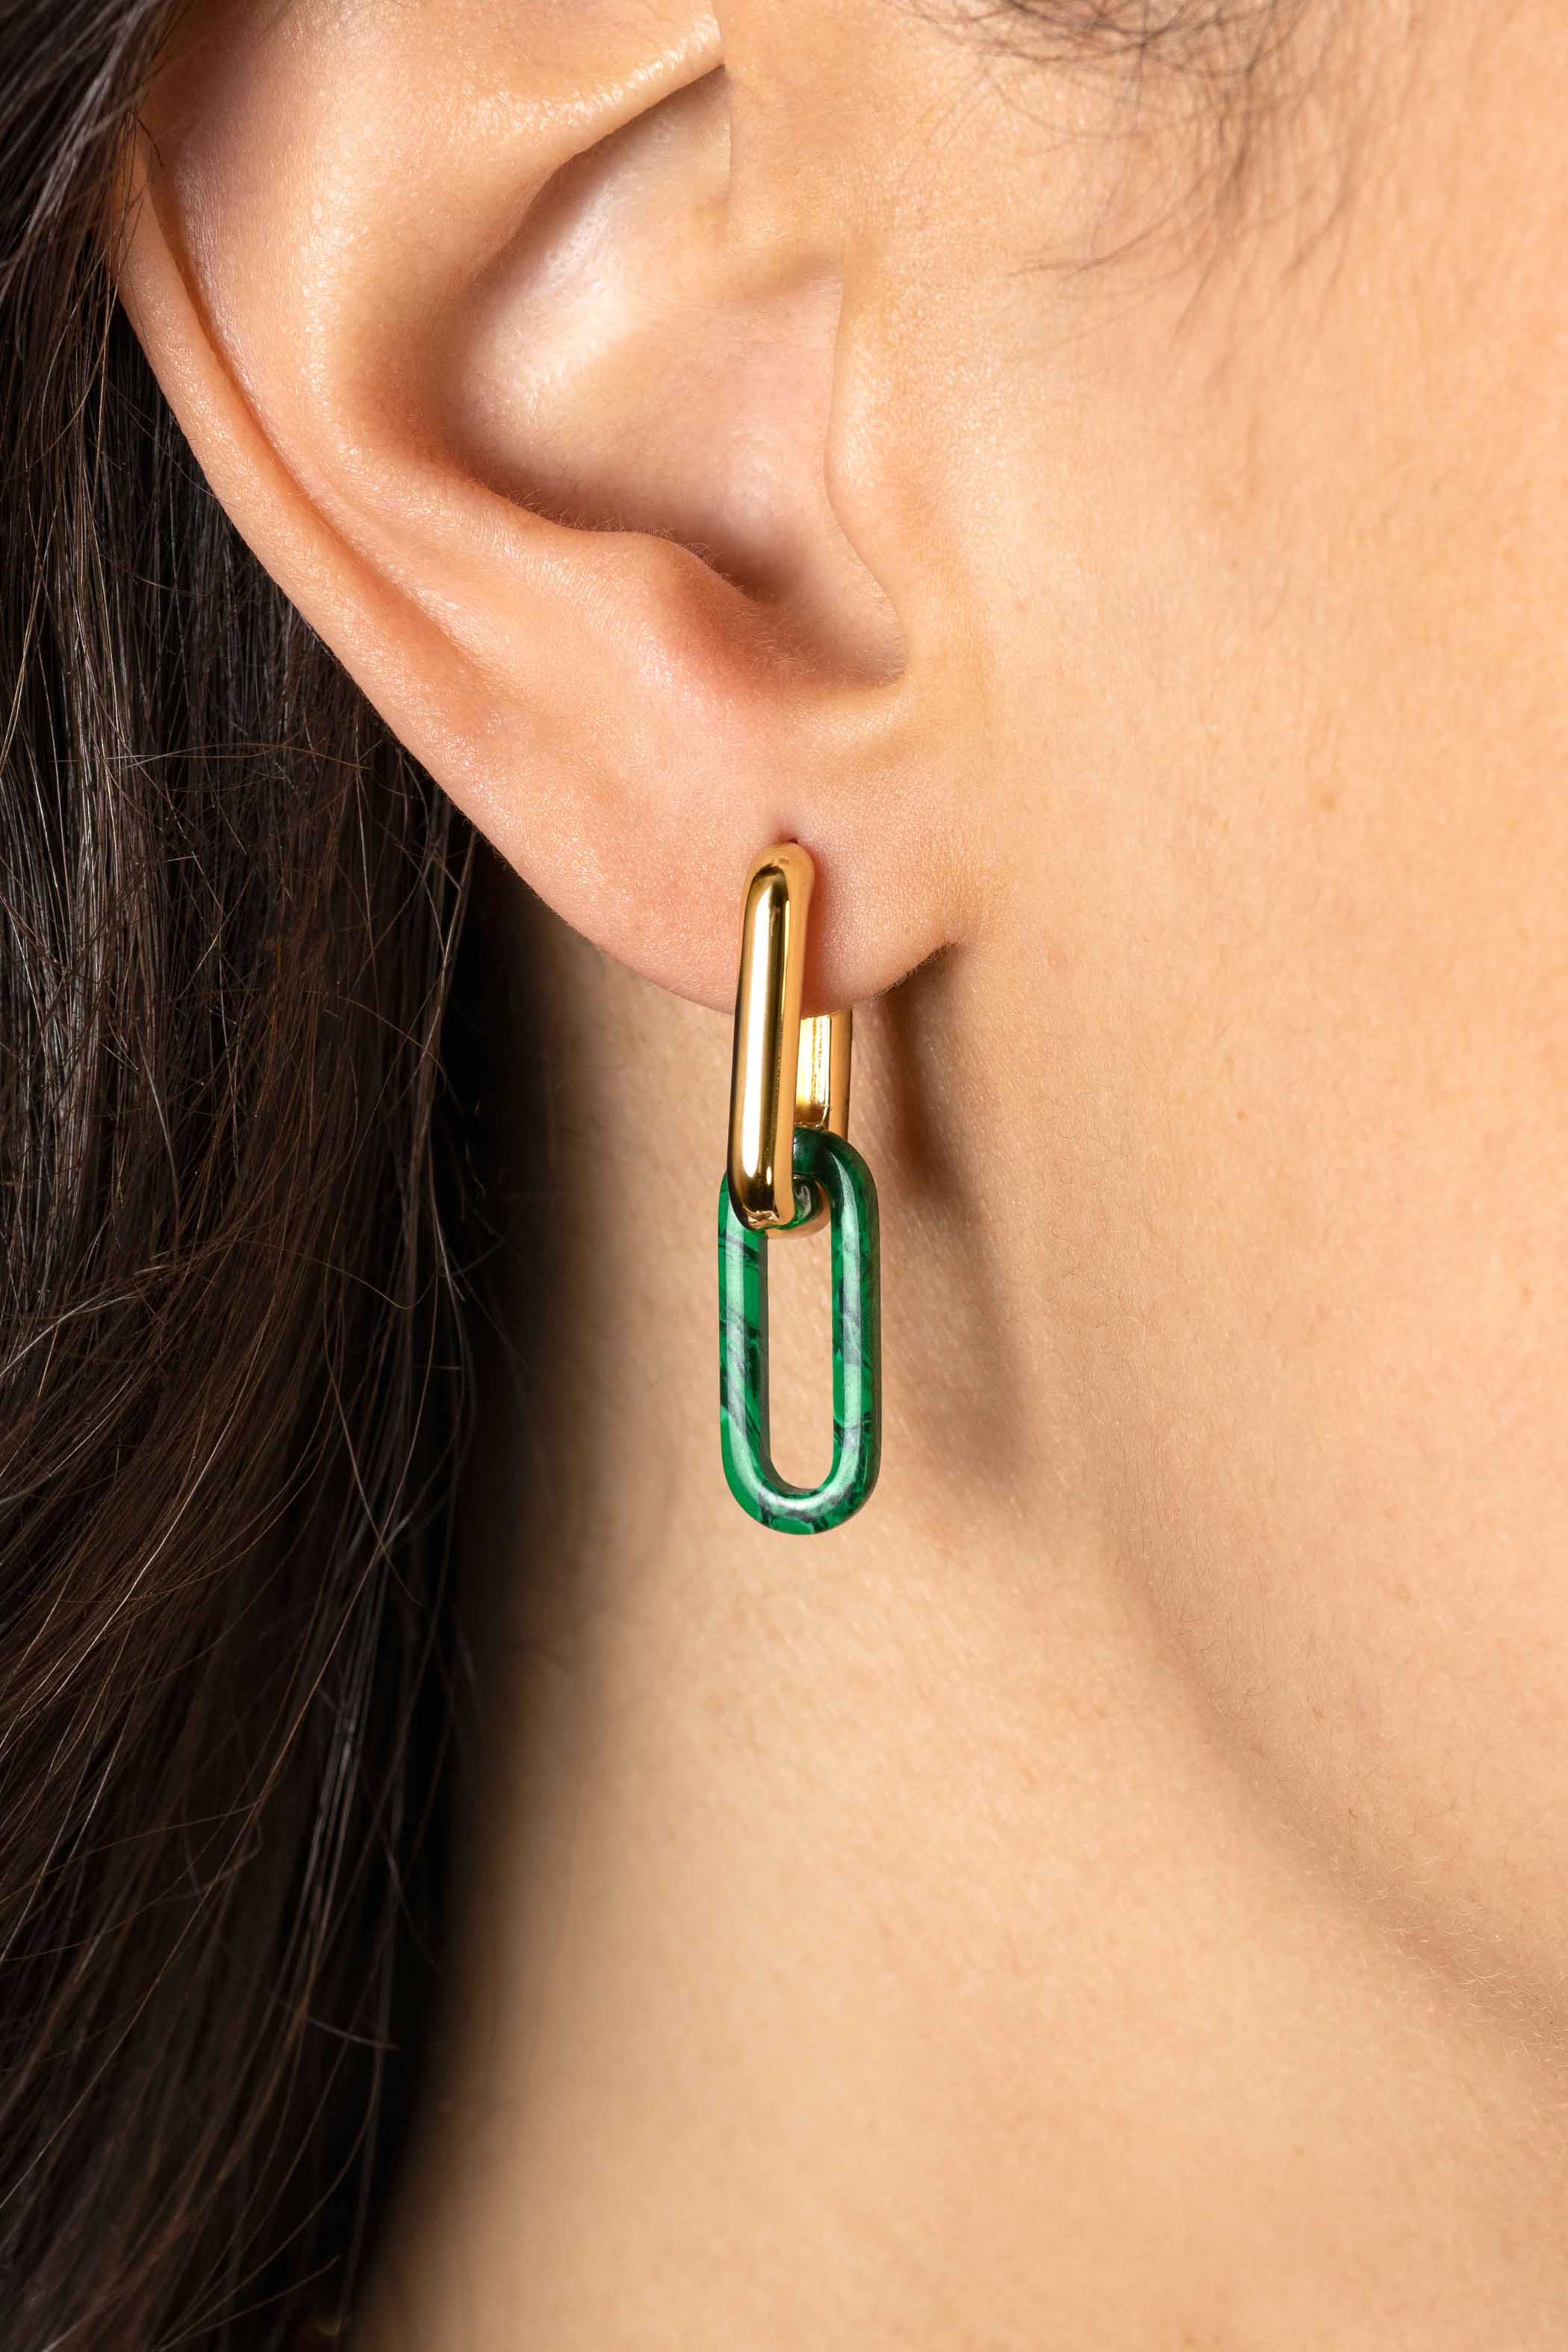 19mm ZINZI Oval Earrings Pendants in Trendy Malachite Green ZICH2455G (excl. hoop earrings)